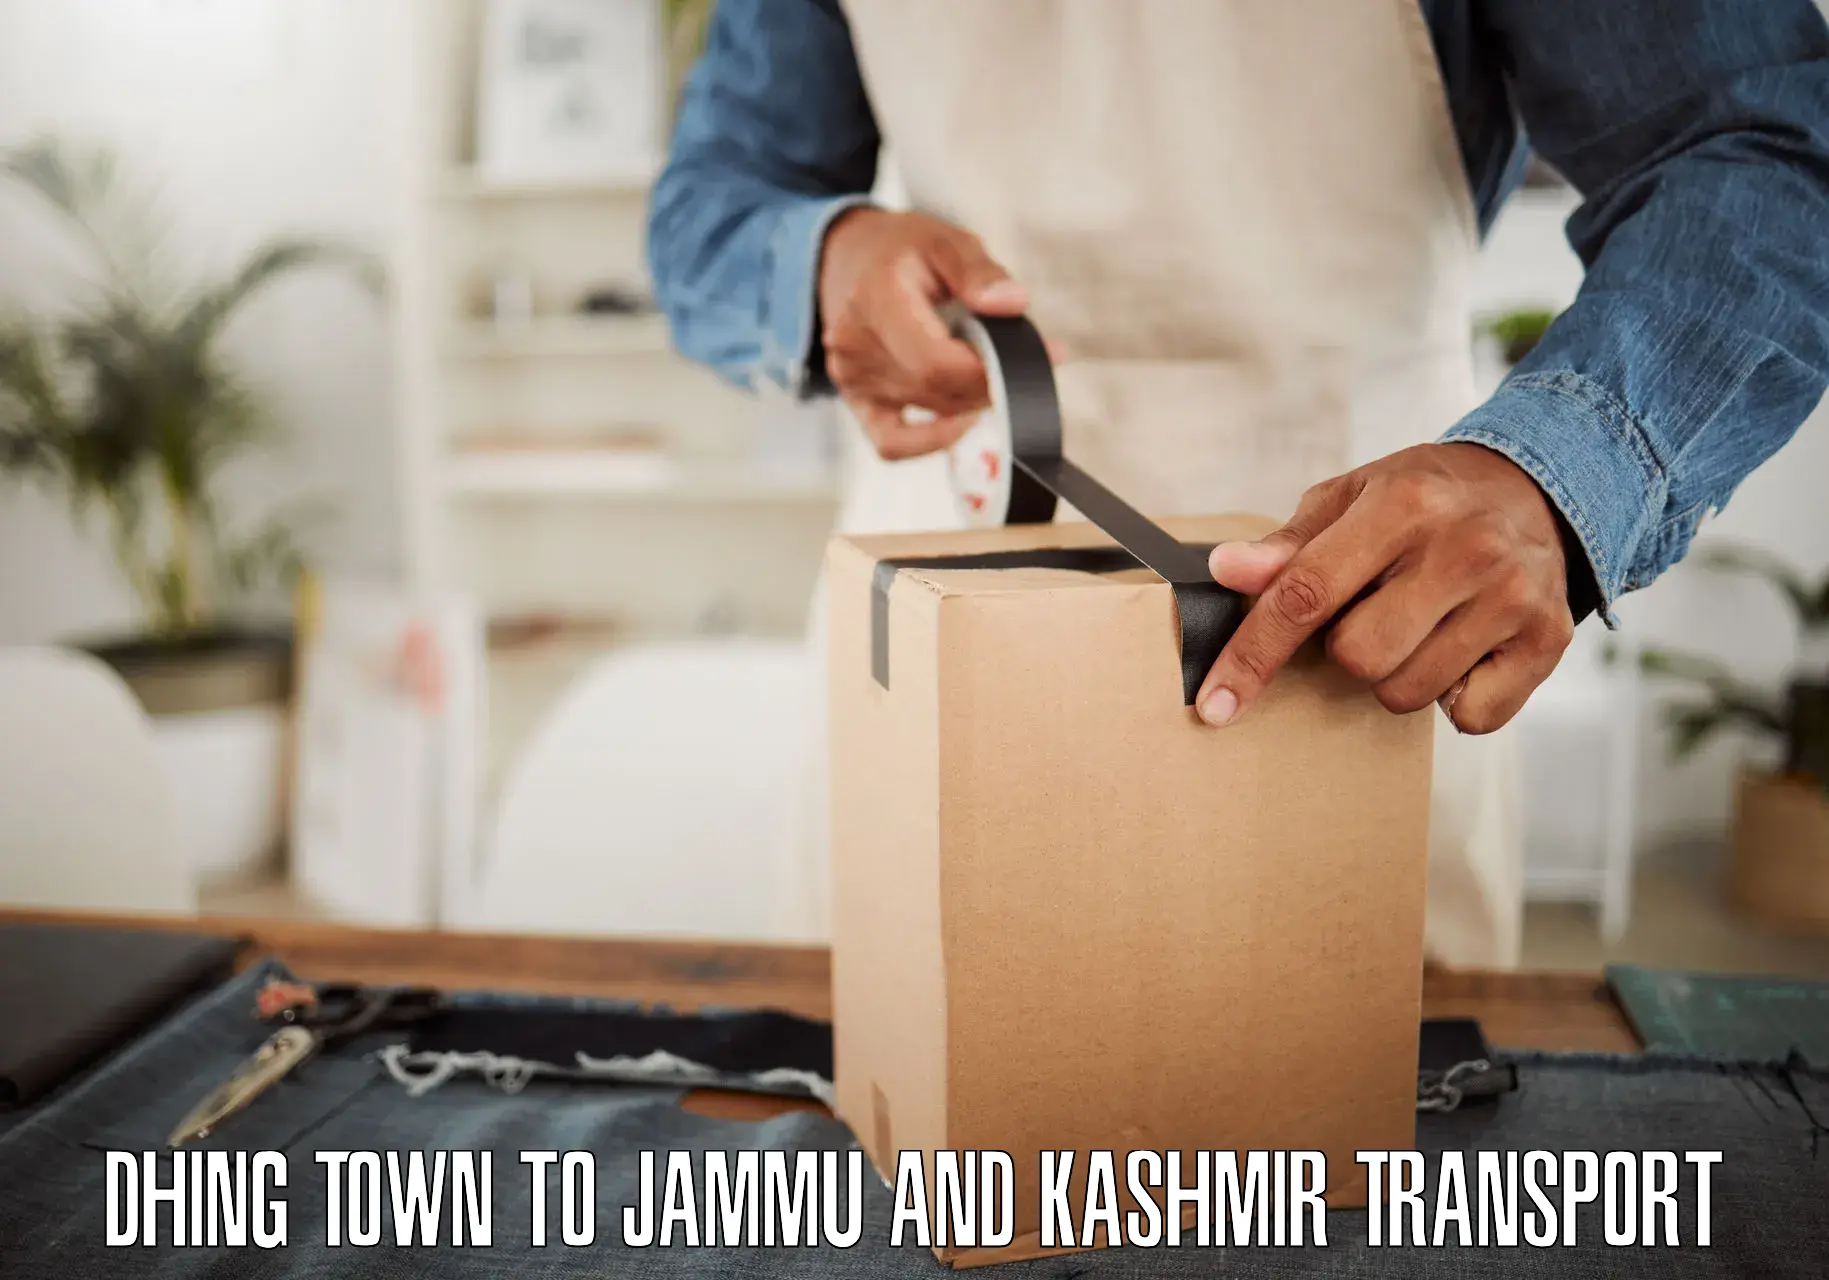 Furniture transport service Dhing Town to University of Kashmir Srinagar